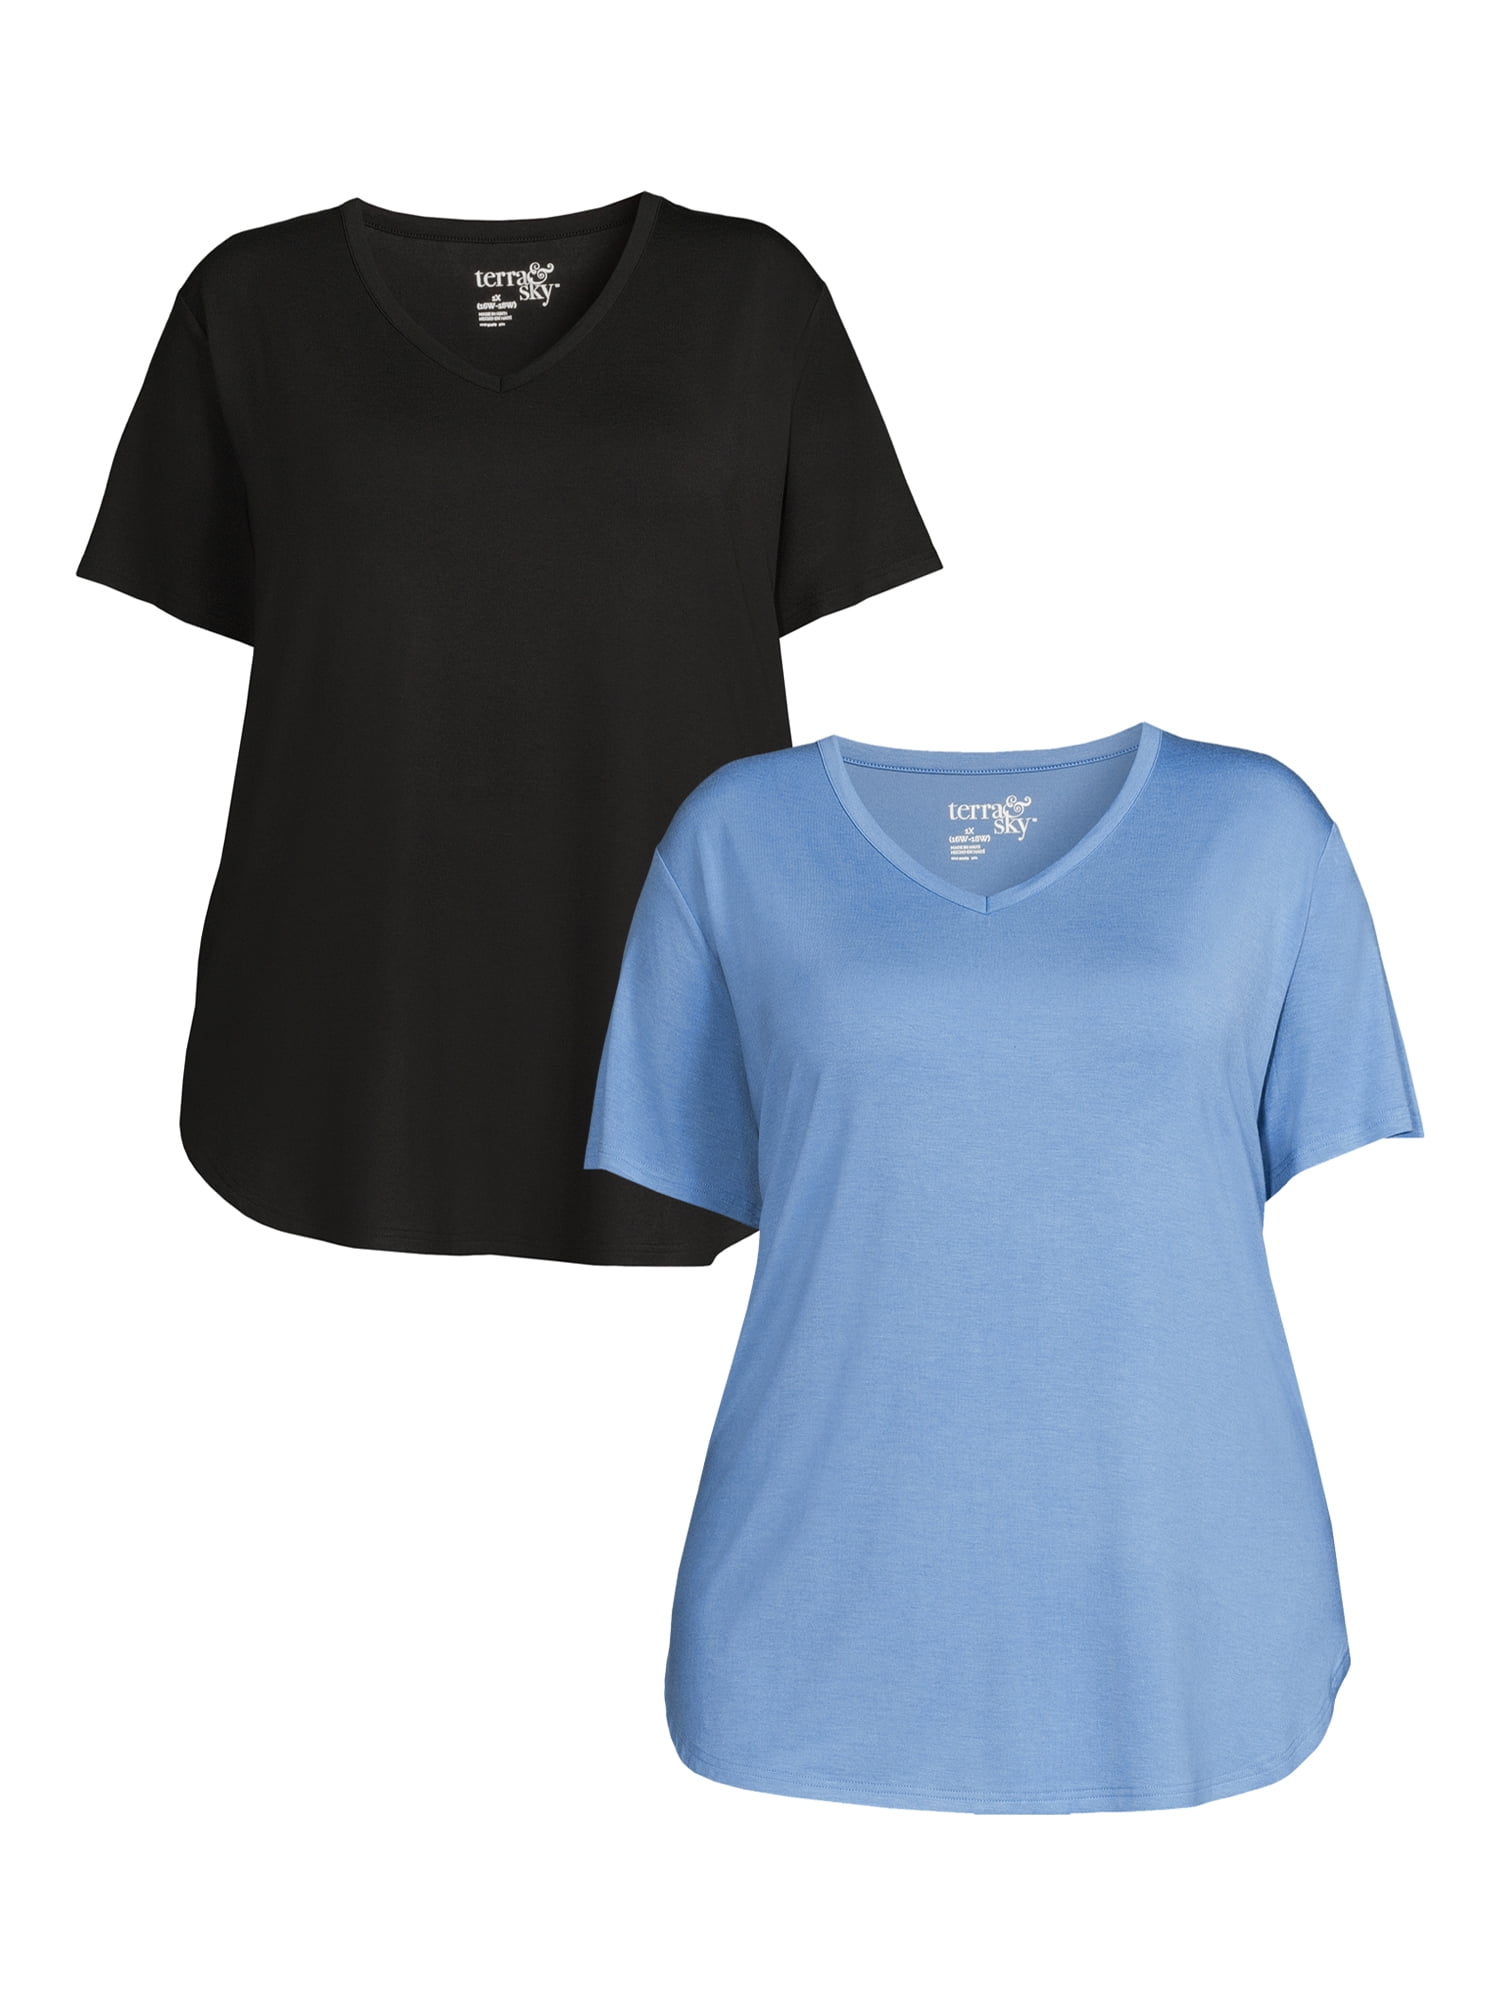 Terra & Sky, Tops, Terra Sky 2x 2w 22w Plus Dusty Blue Split Vneck Cotton  Ss Shirt Tshirt Top